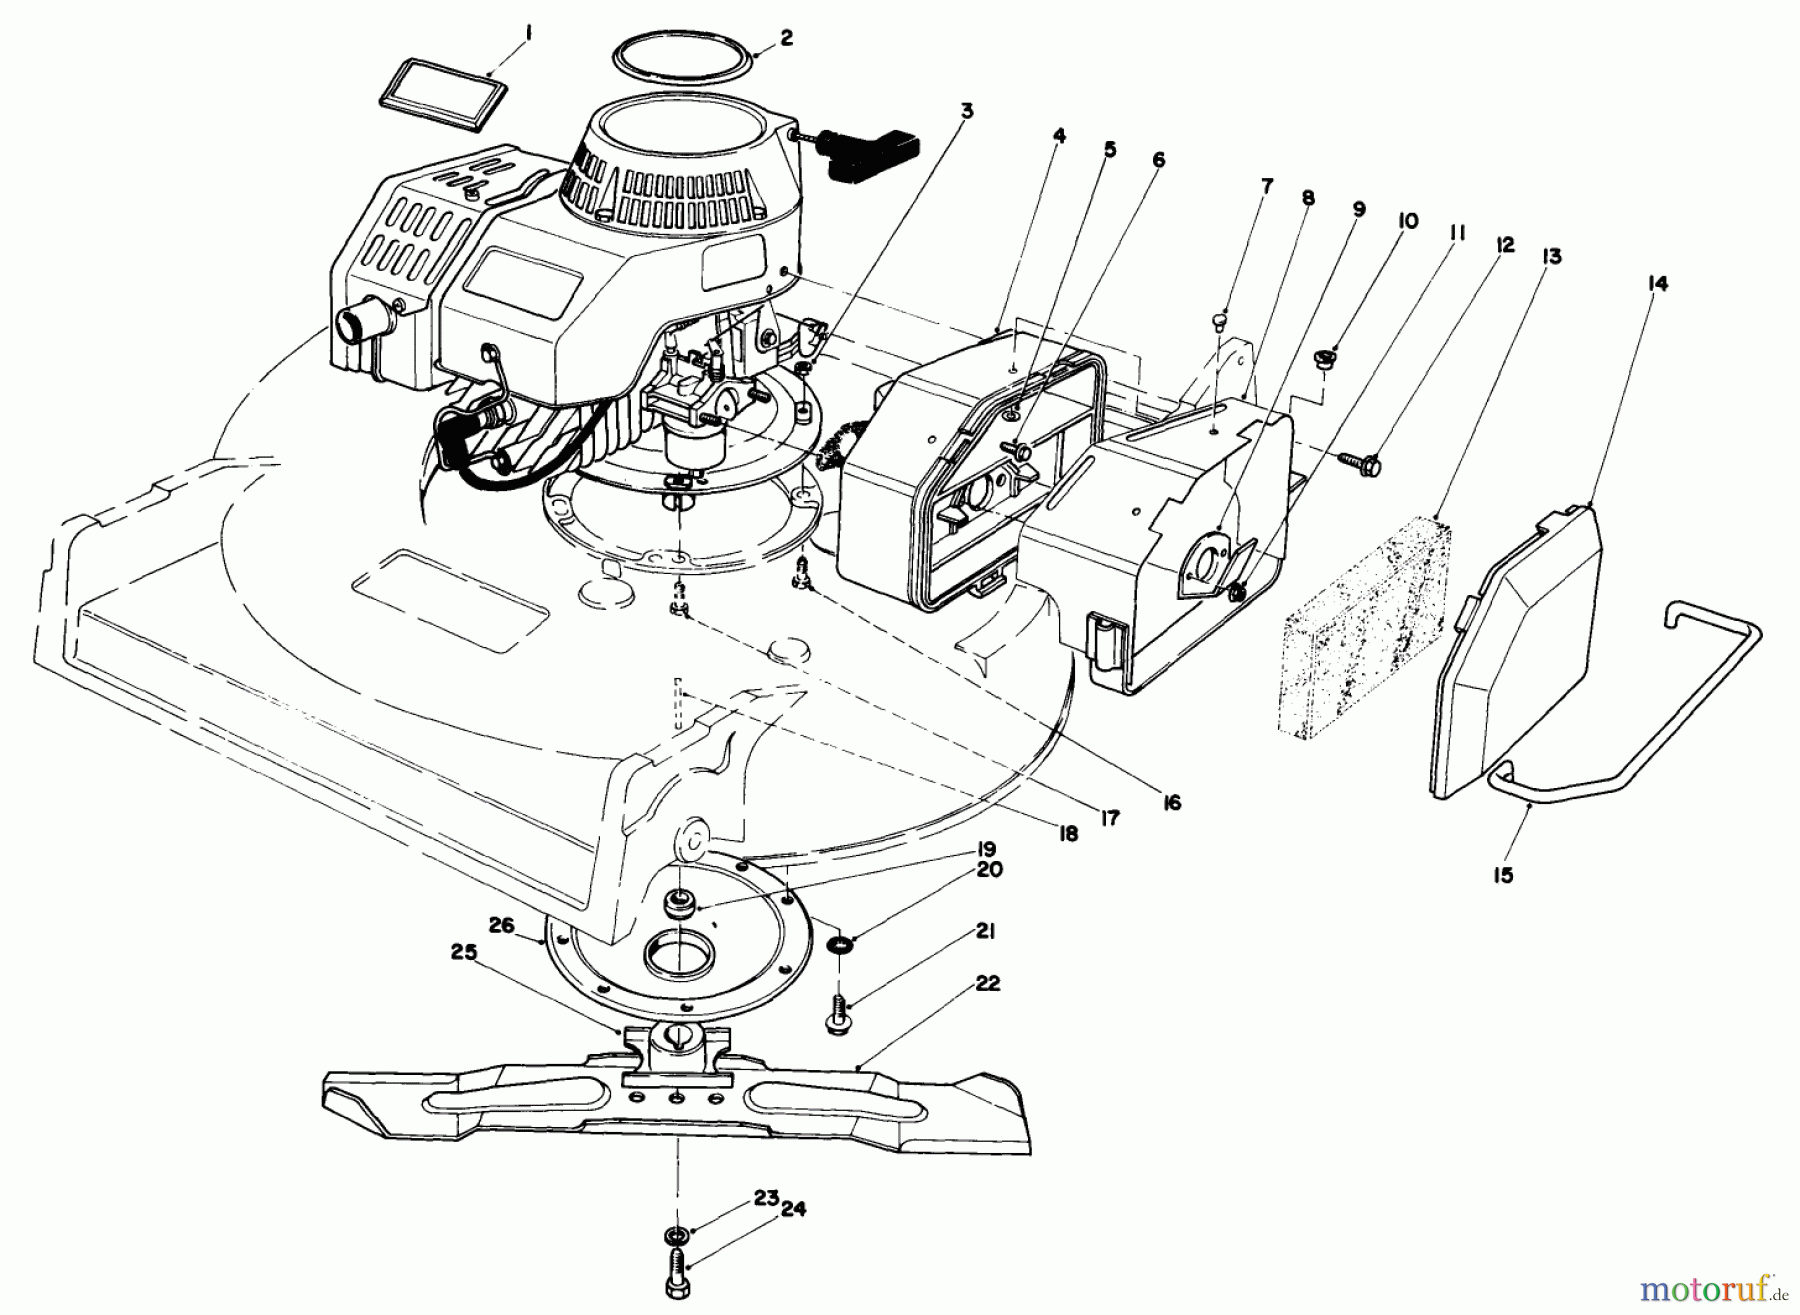  Toro Neu Mowers, Walk-Behind Seite 2 22030 - Toro Lawnmower, 1989 (9000001-9999999) ENGINE ASSEMBLY (MODEL 22030)